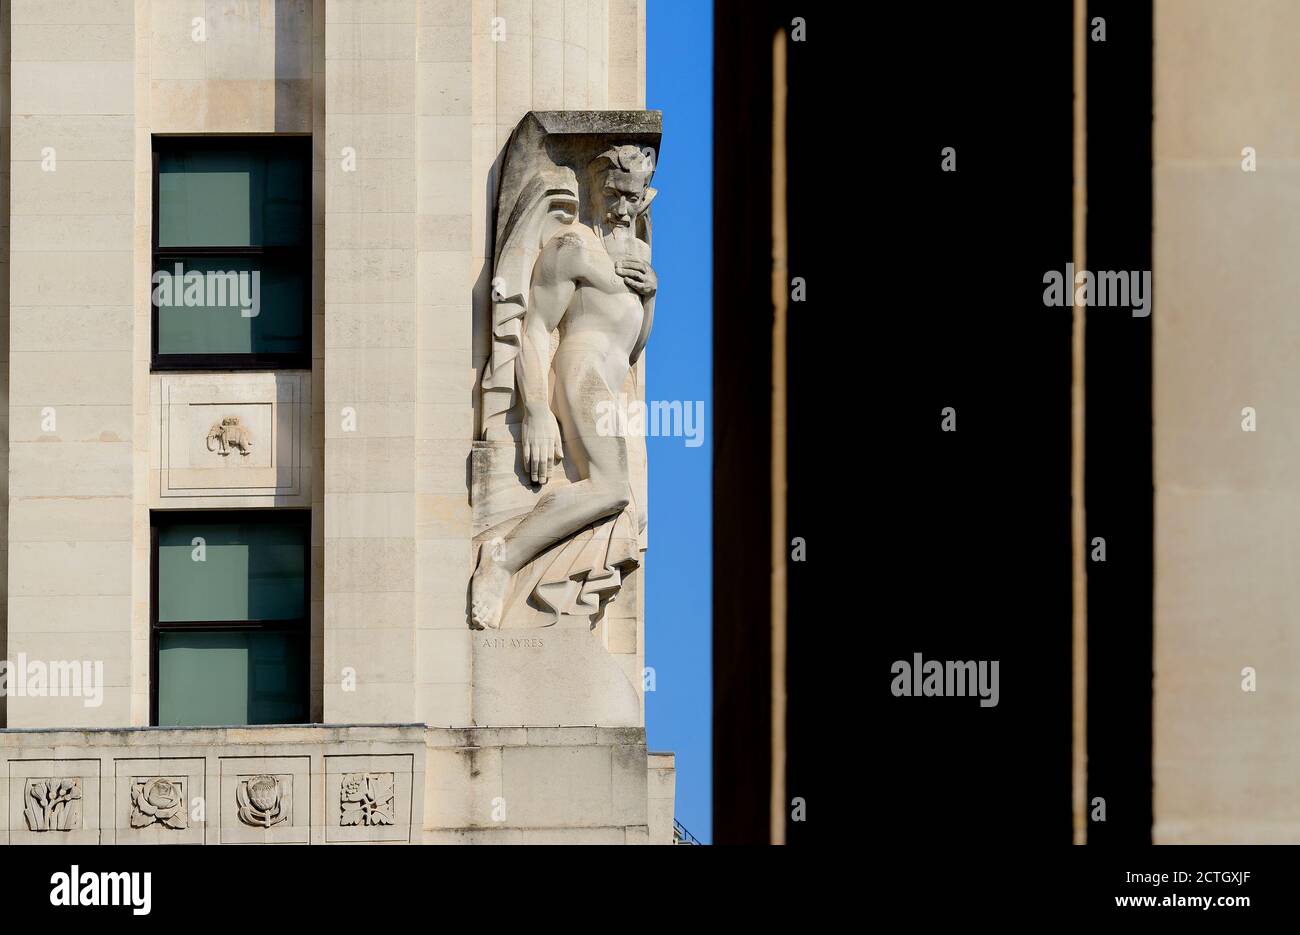 Londra, Inghilterra, Regno Unito. New Adelphi Building, Adam Street / Victoria Embankment. Art Deco (1938) pietra di Portland. Statua allegorica 'contemplazione' (da UN Foto Stock